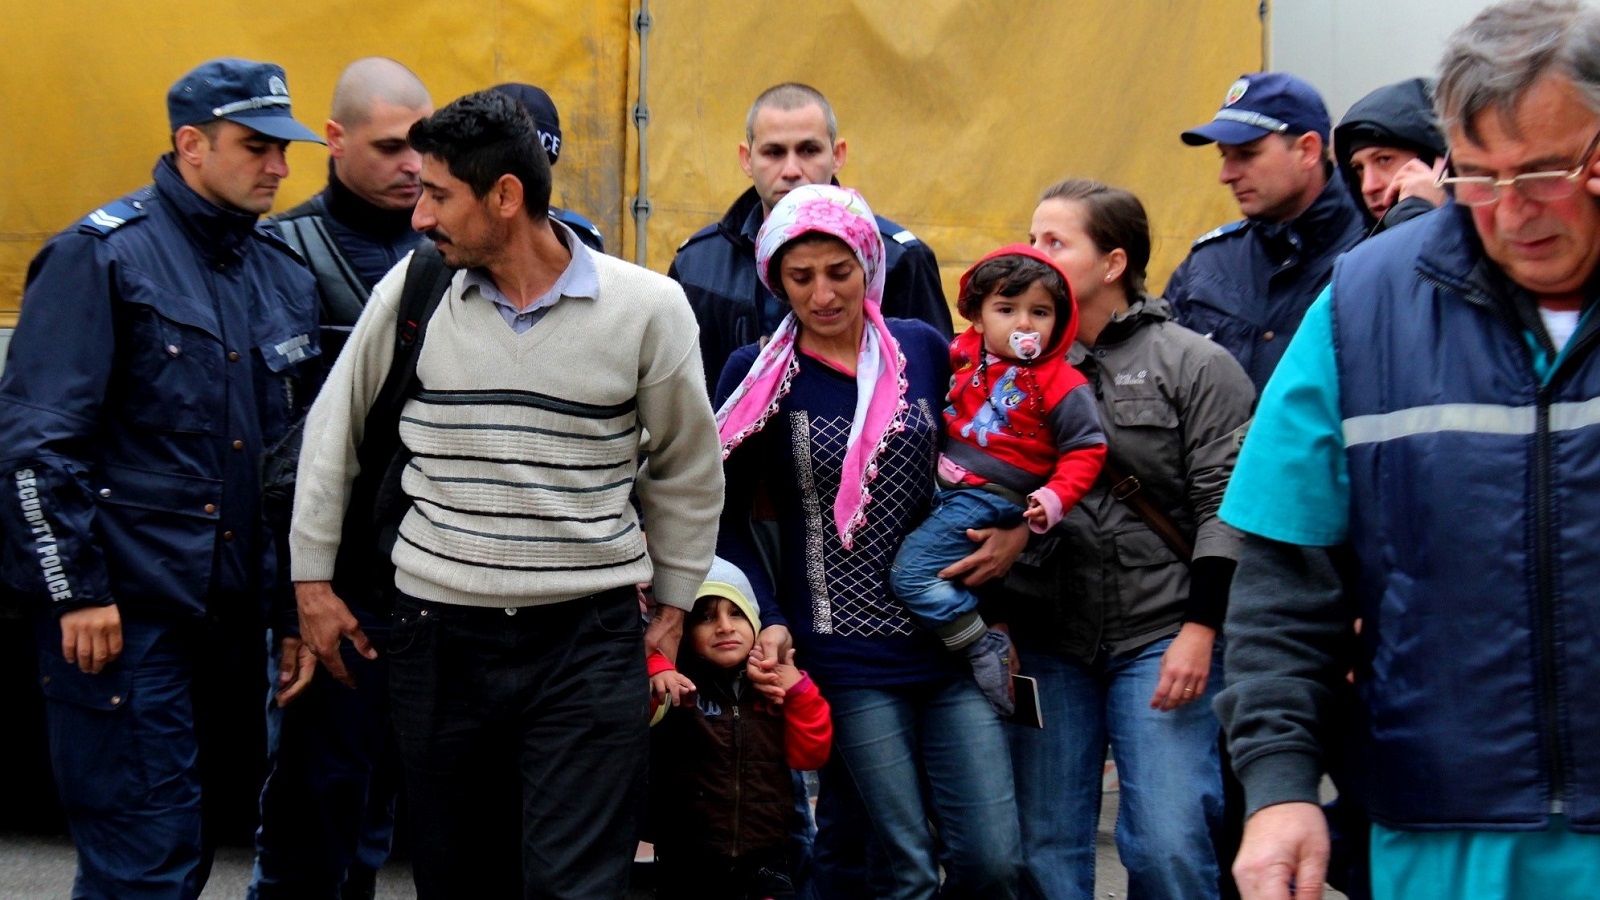 بعيداً عن اللغو اللبناني: اللاجئون السوريون والتجربة البلغارية